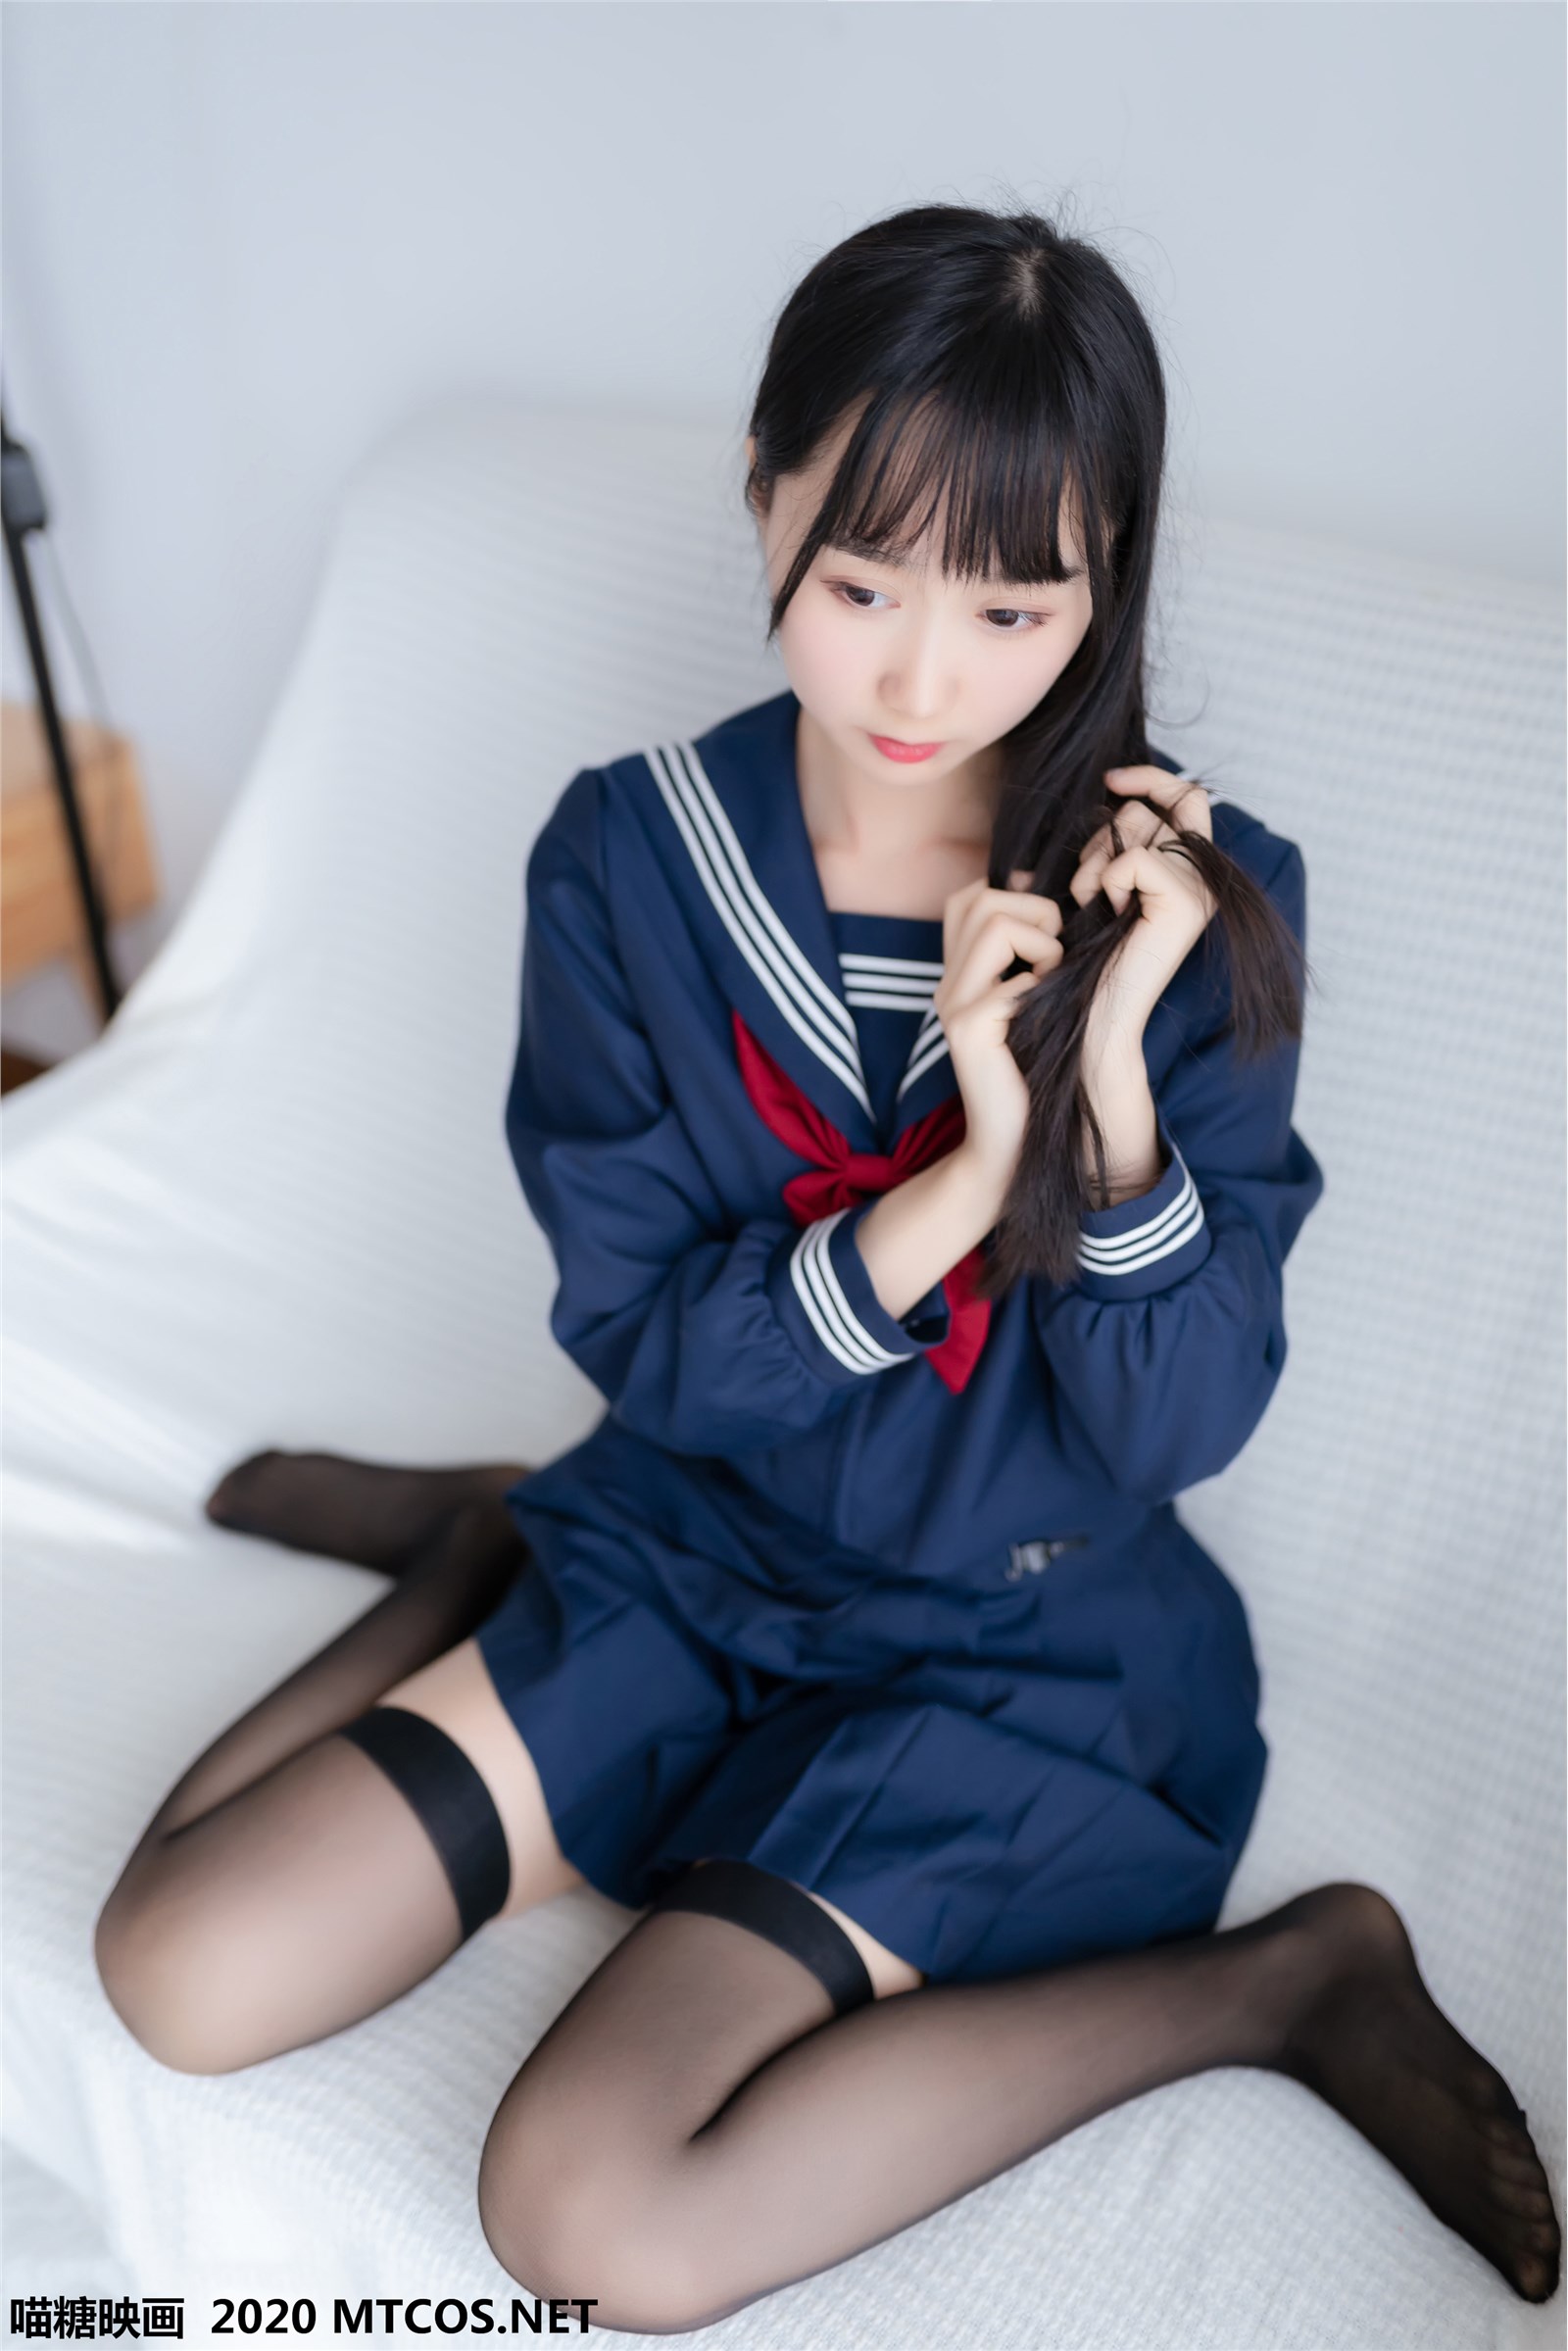 Meow Candy picture JKL.005 Sailor JK uniform(5)